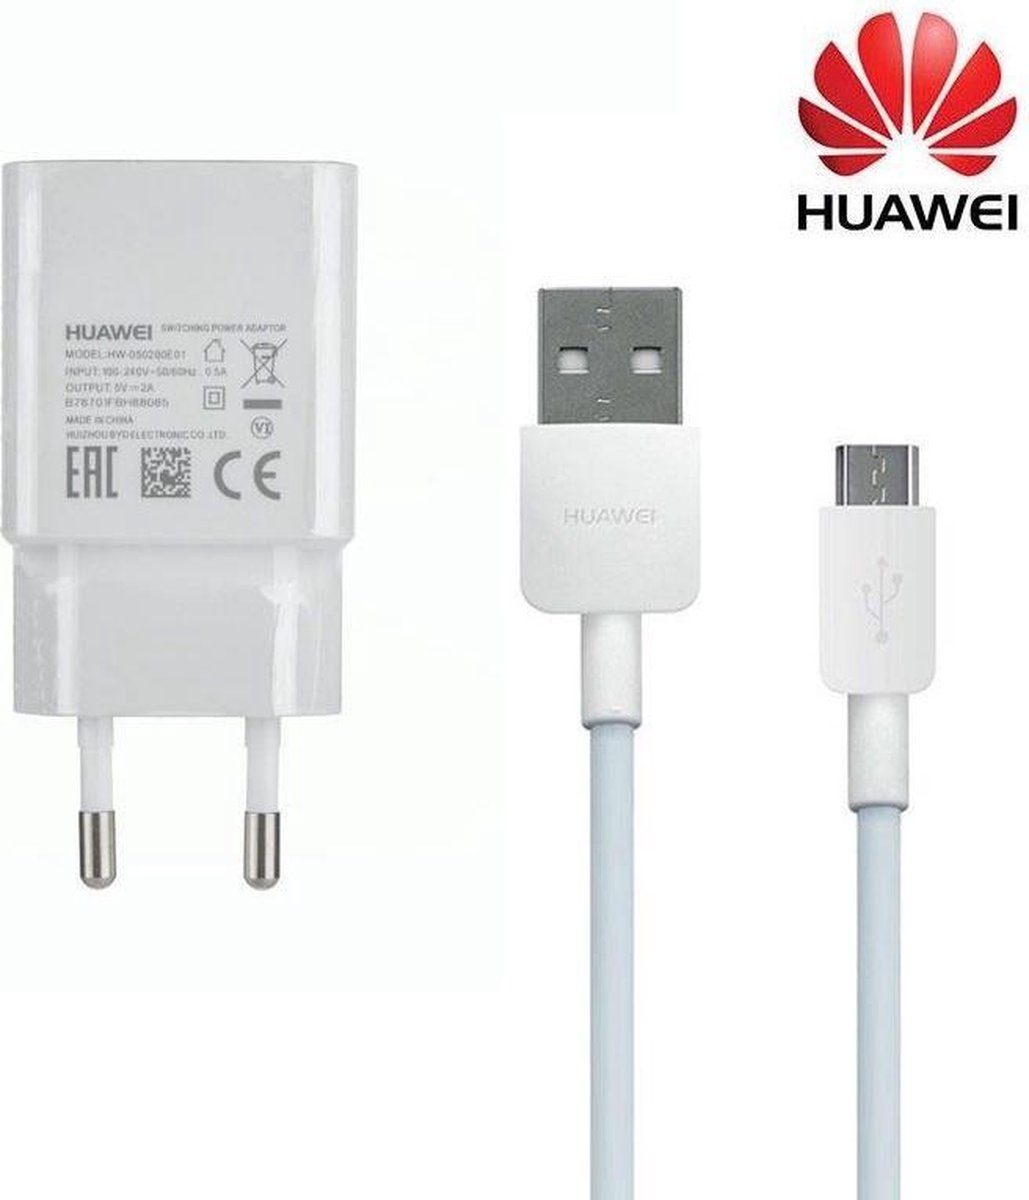 Зарядка для телефона huawei. Зарядка Huawei hw-050200e02. Адаптер Huawei hw-050200e01. Сетевая зарядка Huawei ap32 + кабель MICROUSB. Hw-050200e01.